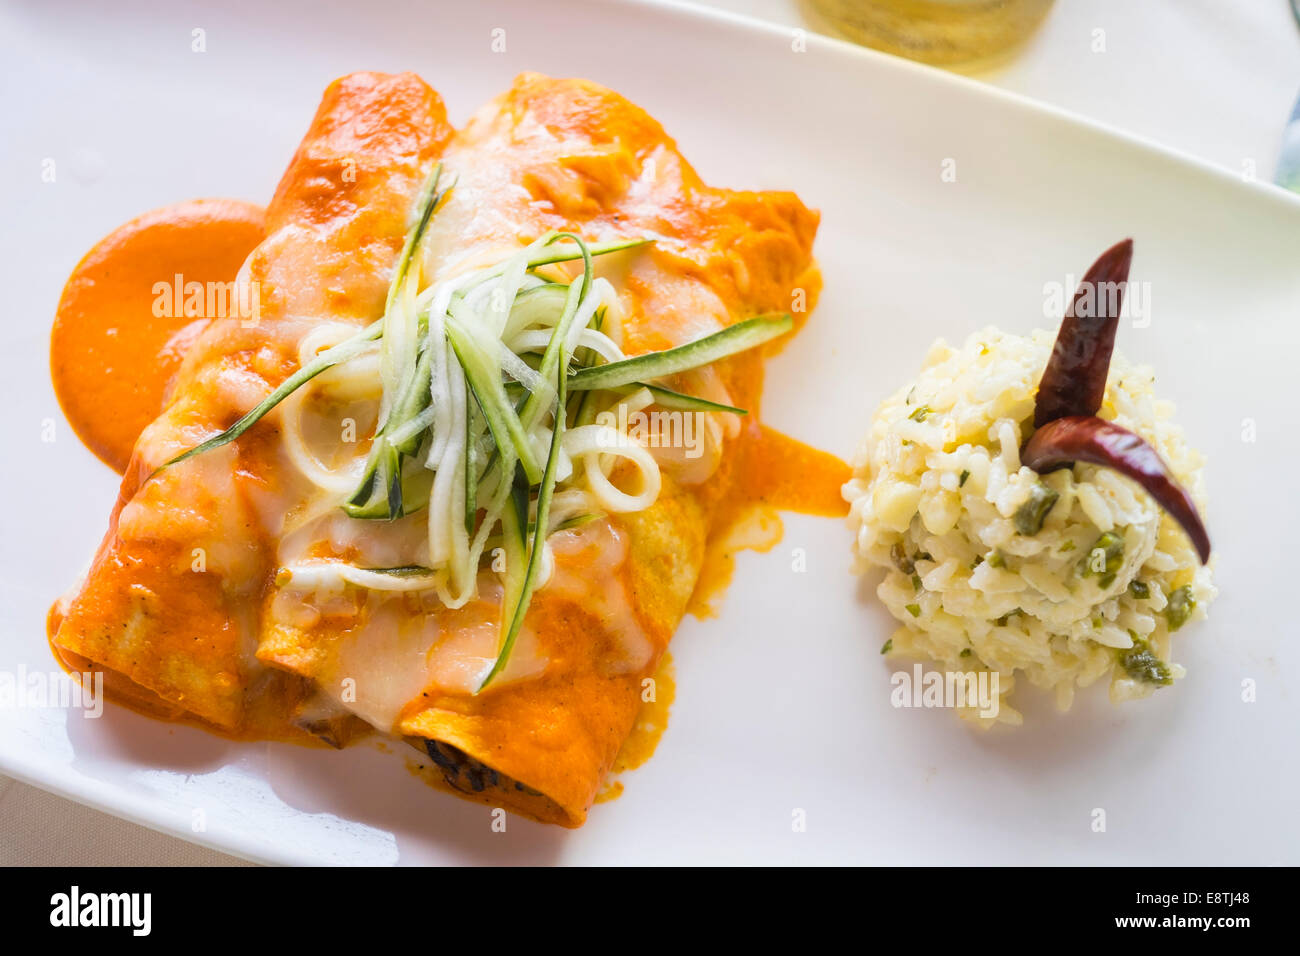 3 Enchilada hüllt in Paprika-Sauce, mit Stücken von Meeresfrüchten wie Oktopus und Garnelen gefüllt. Pflanzliche Reis als Beilage. Stockfoto